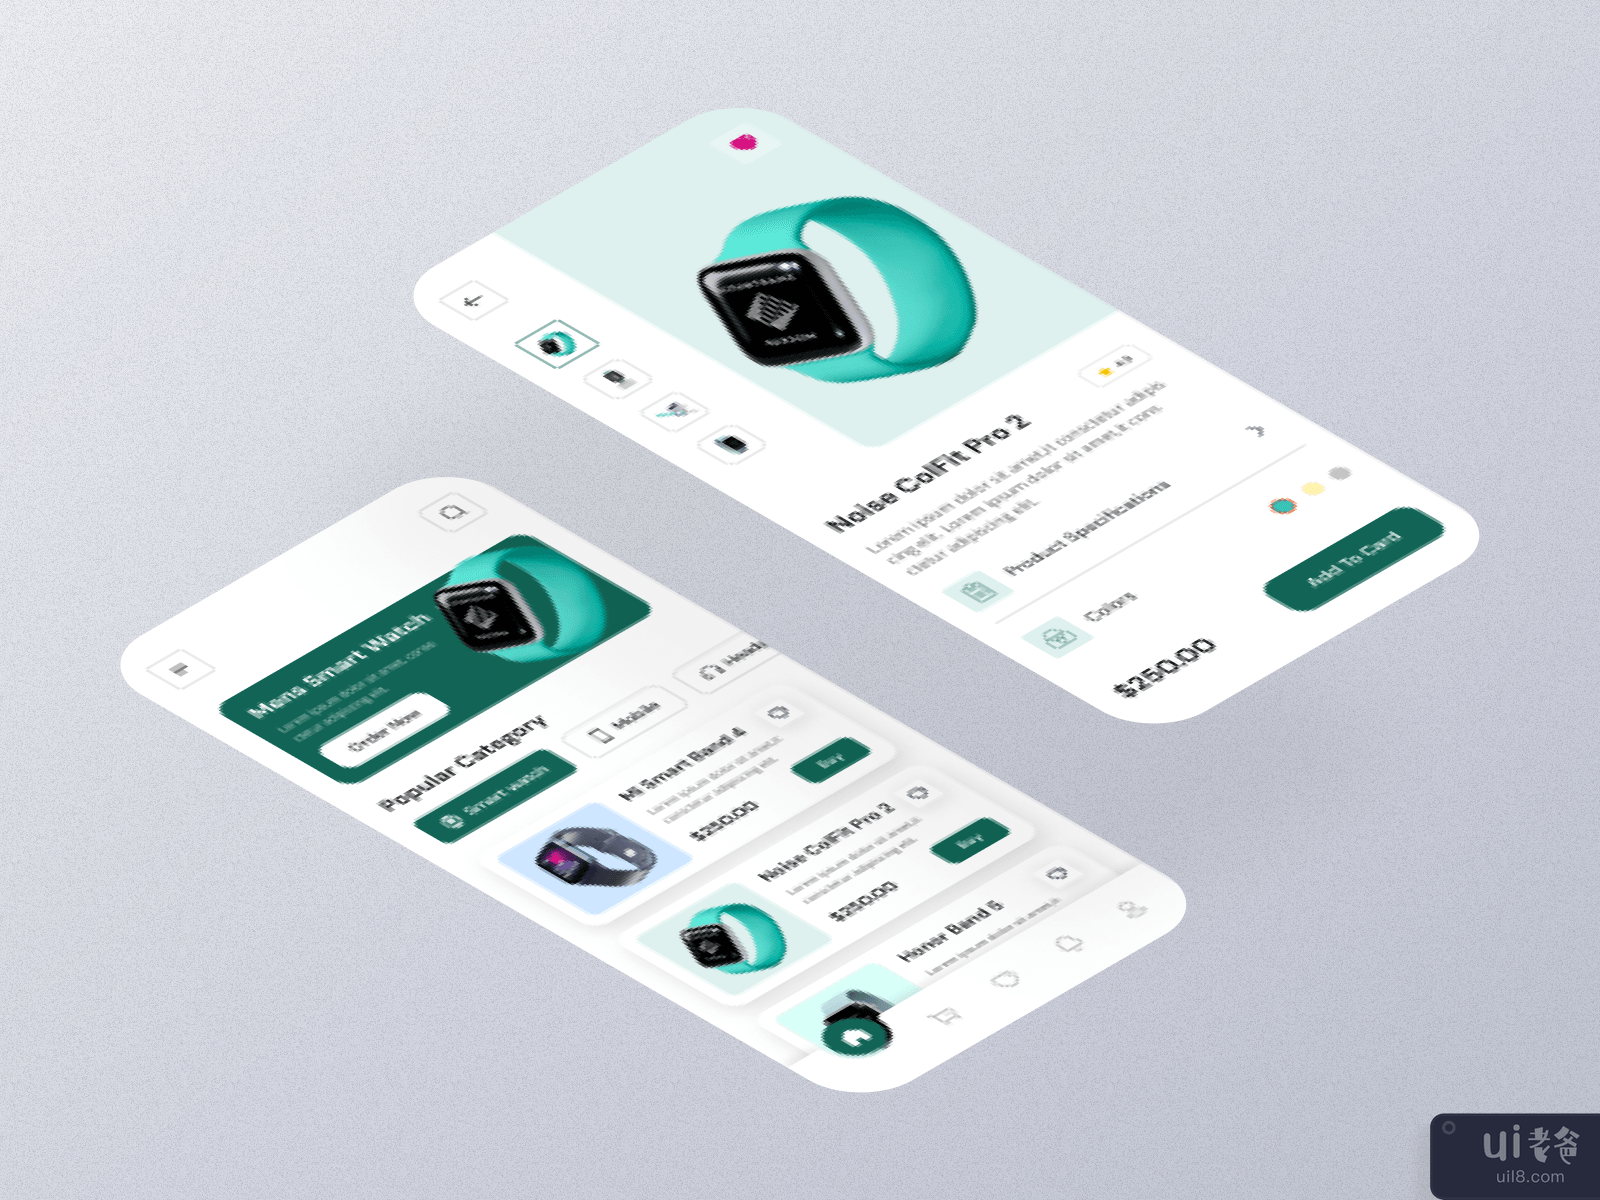 智能手表应用程序 - 用户界面设计(Smart Watch App - UI Design)插图